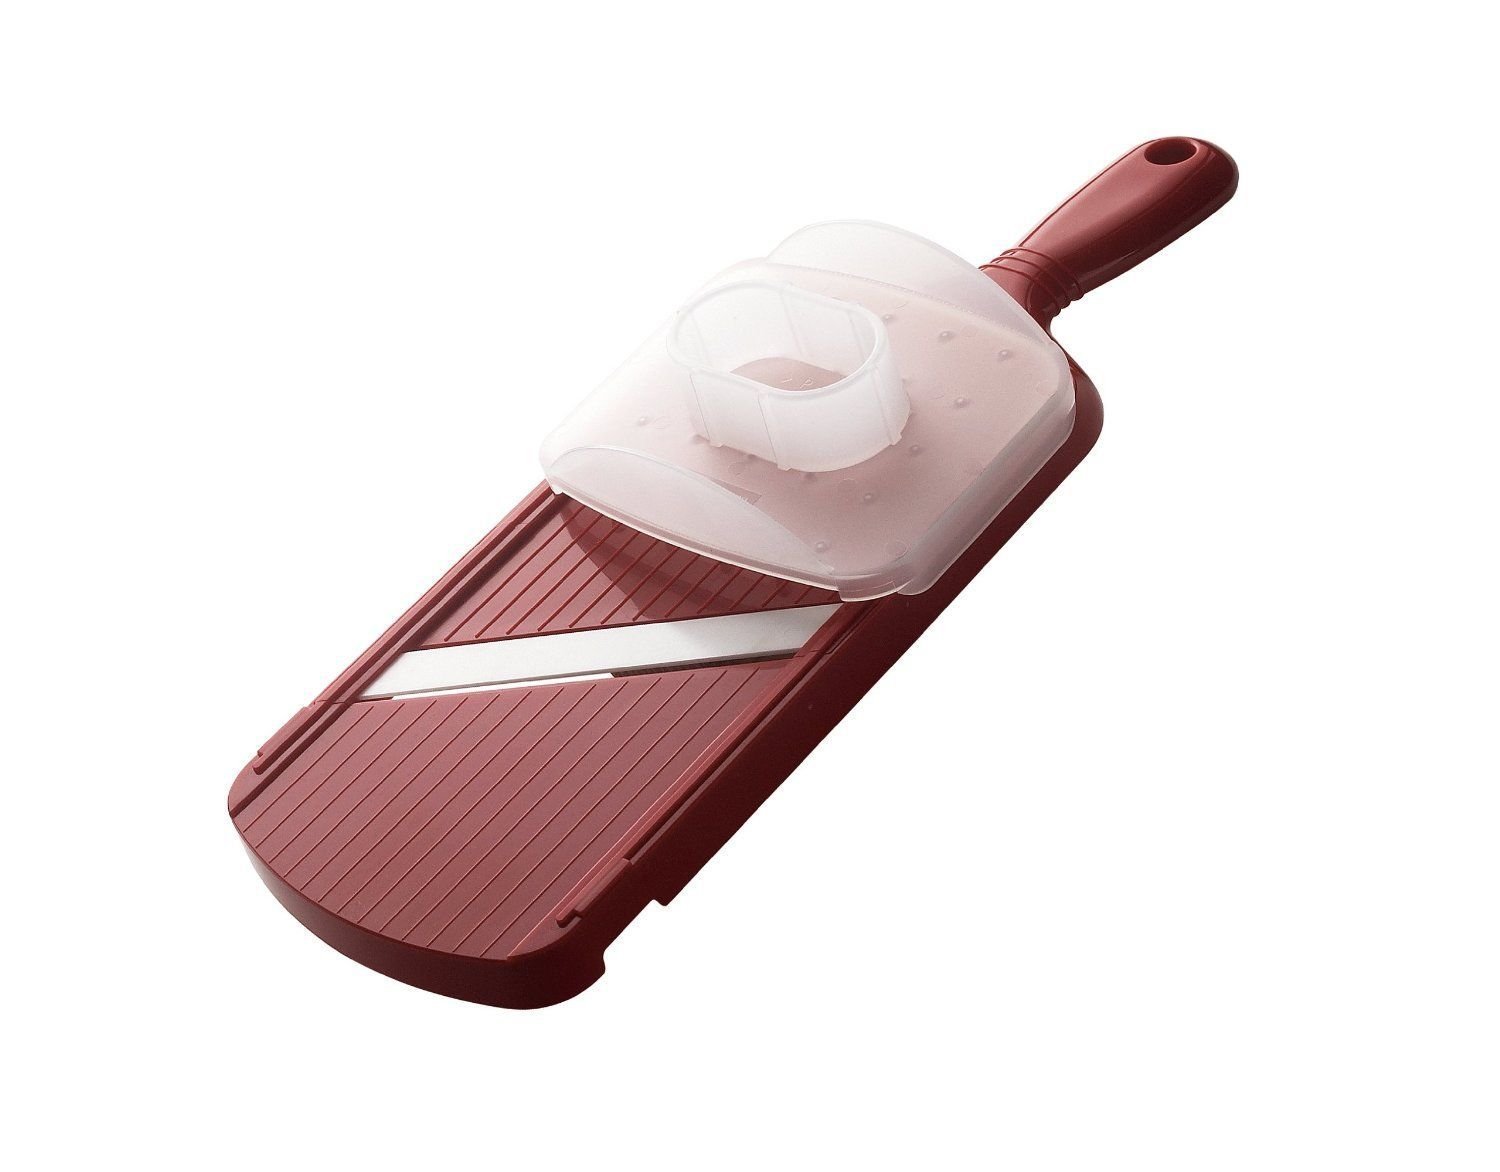 Kyocera CSN202RD Red Ceramic Adjustable Mandoline Slicer